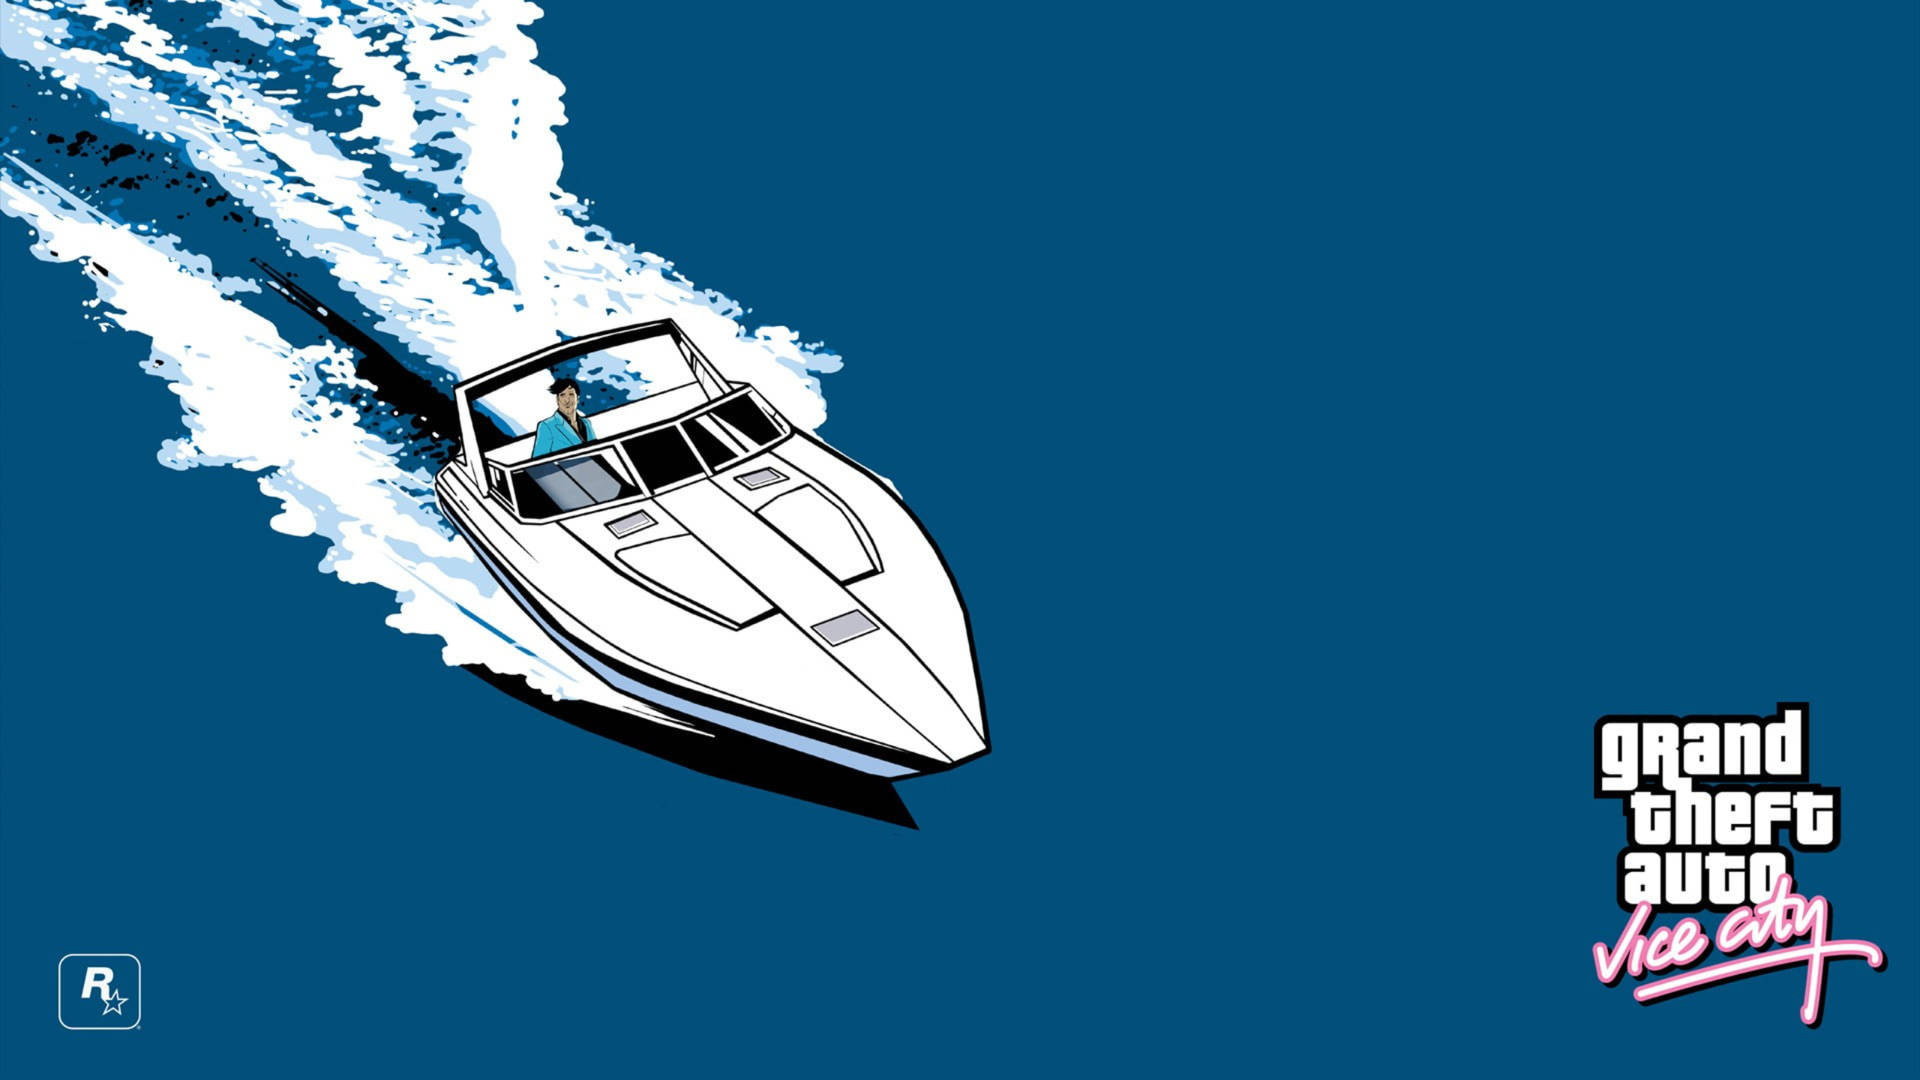 Tapet til Grand Theft Auto-mand på båd: Padle igennem det lyse Grand Theft Auto-miljø på en båd. Wallpaper